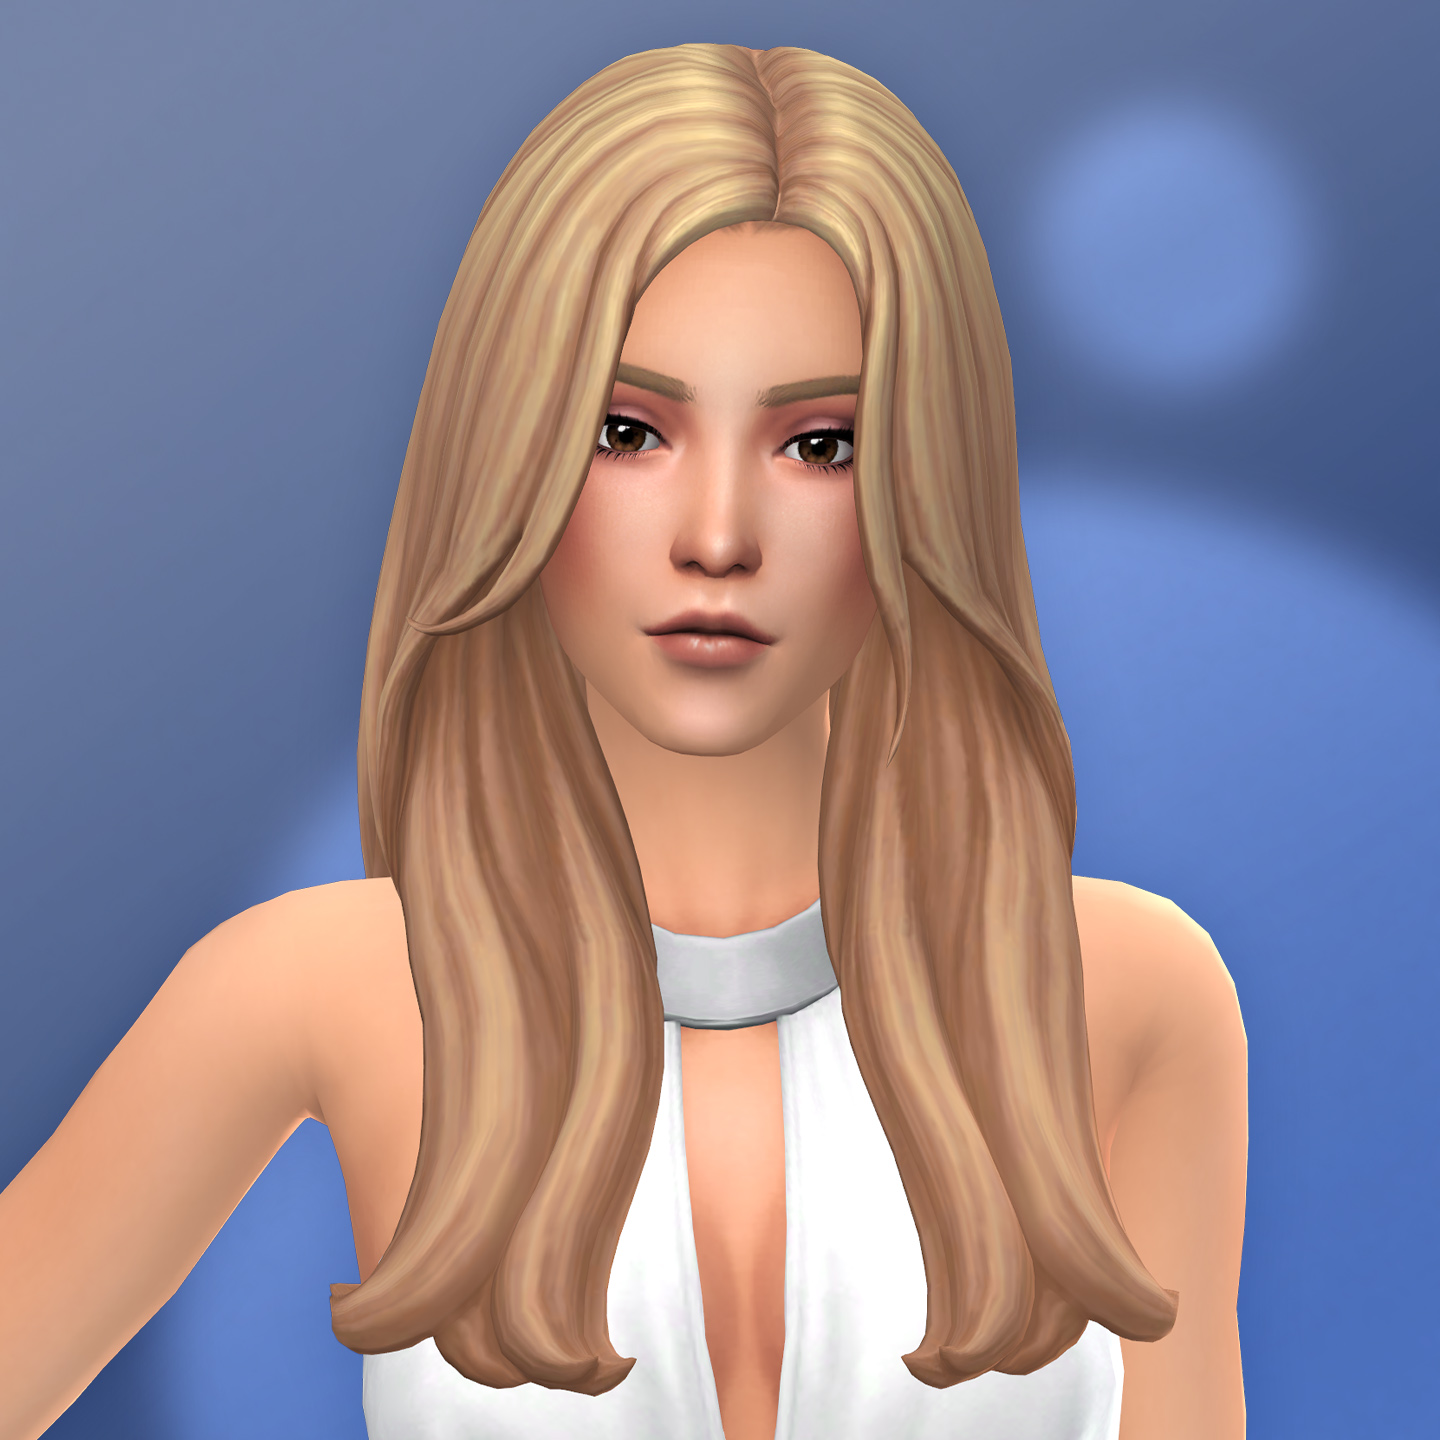 QICC - Claire Hair - The Sims 4 Create a Sim - CurseForge